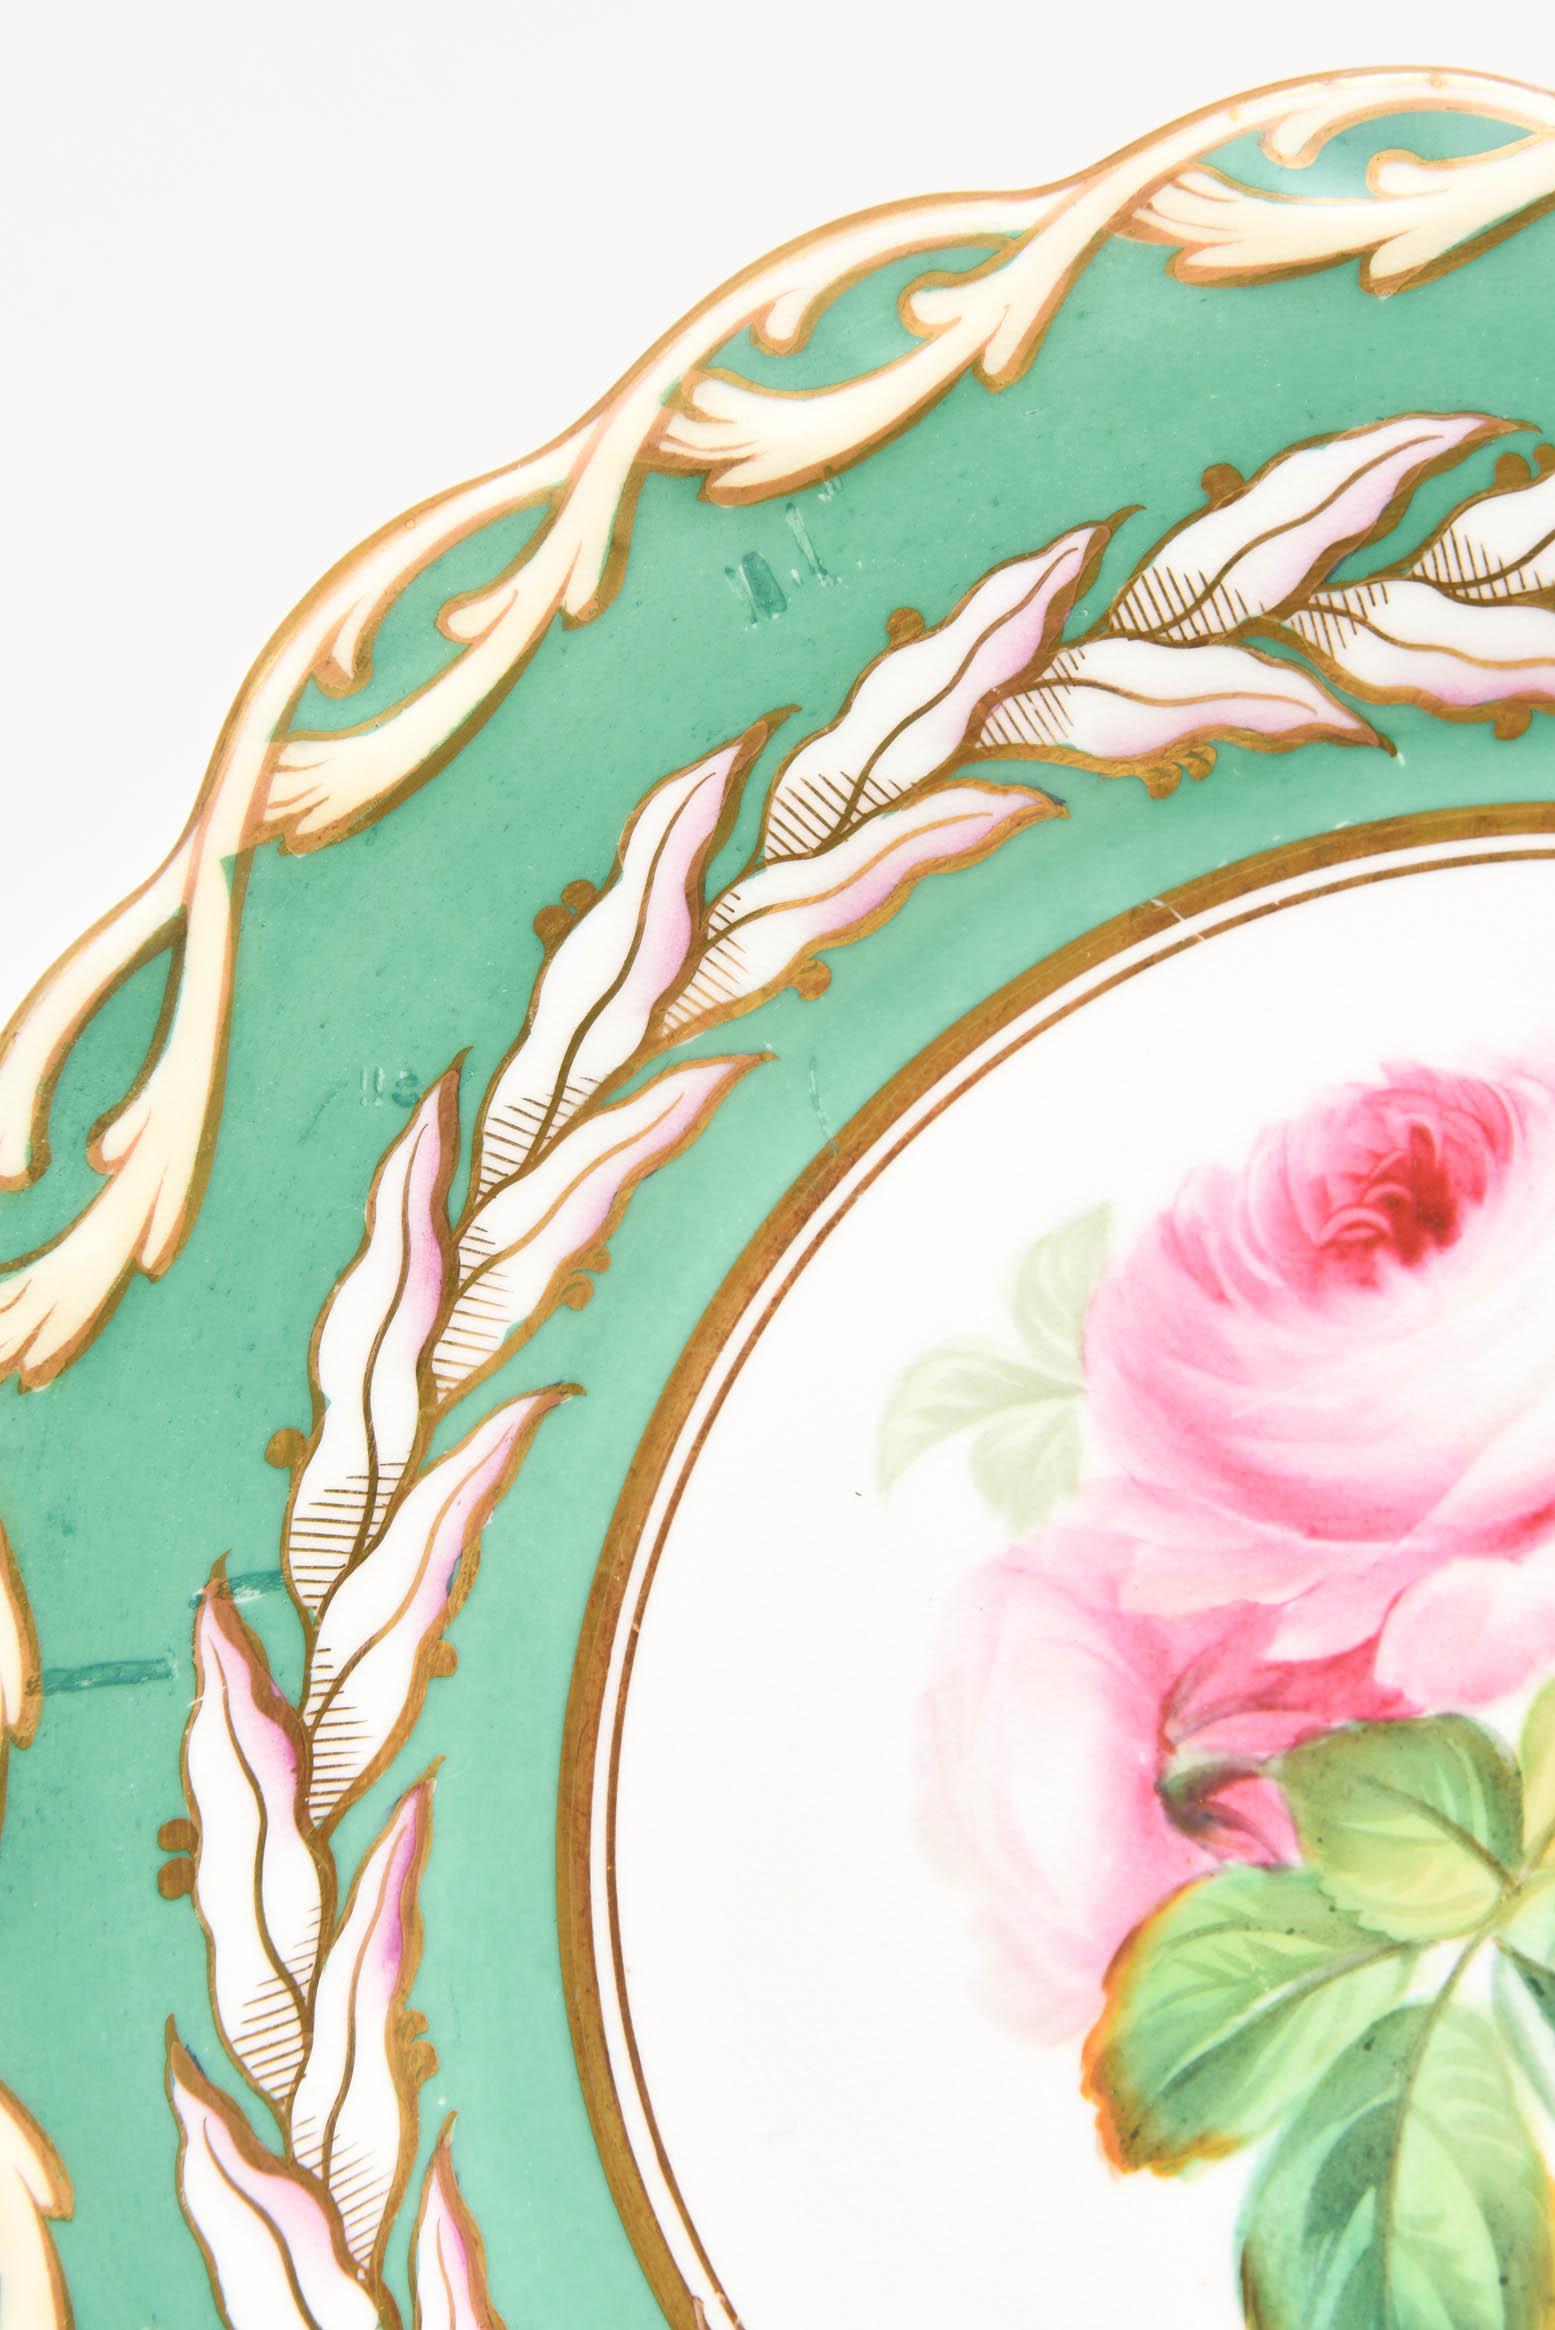 12 Antique Botanical Plates, English Porcelain 19th Century Handpainted Florals 2